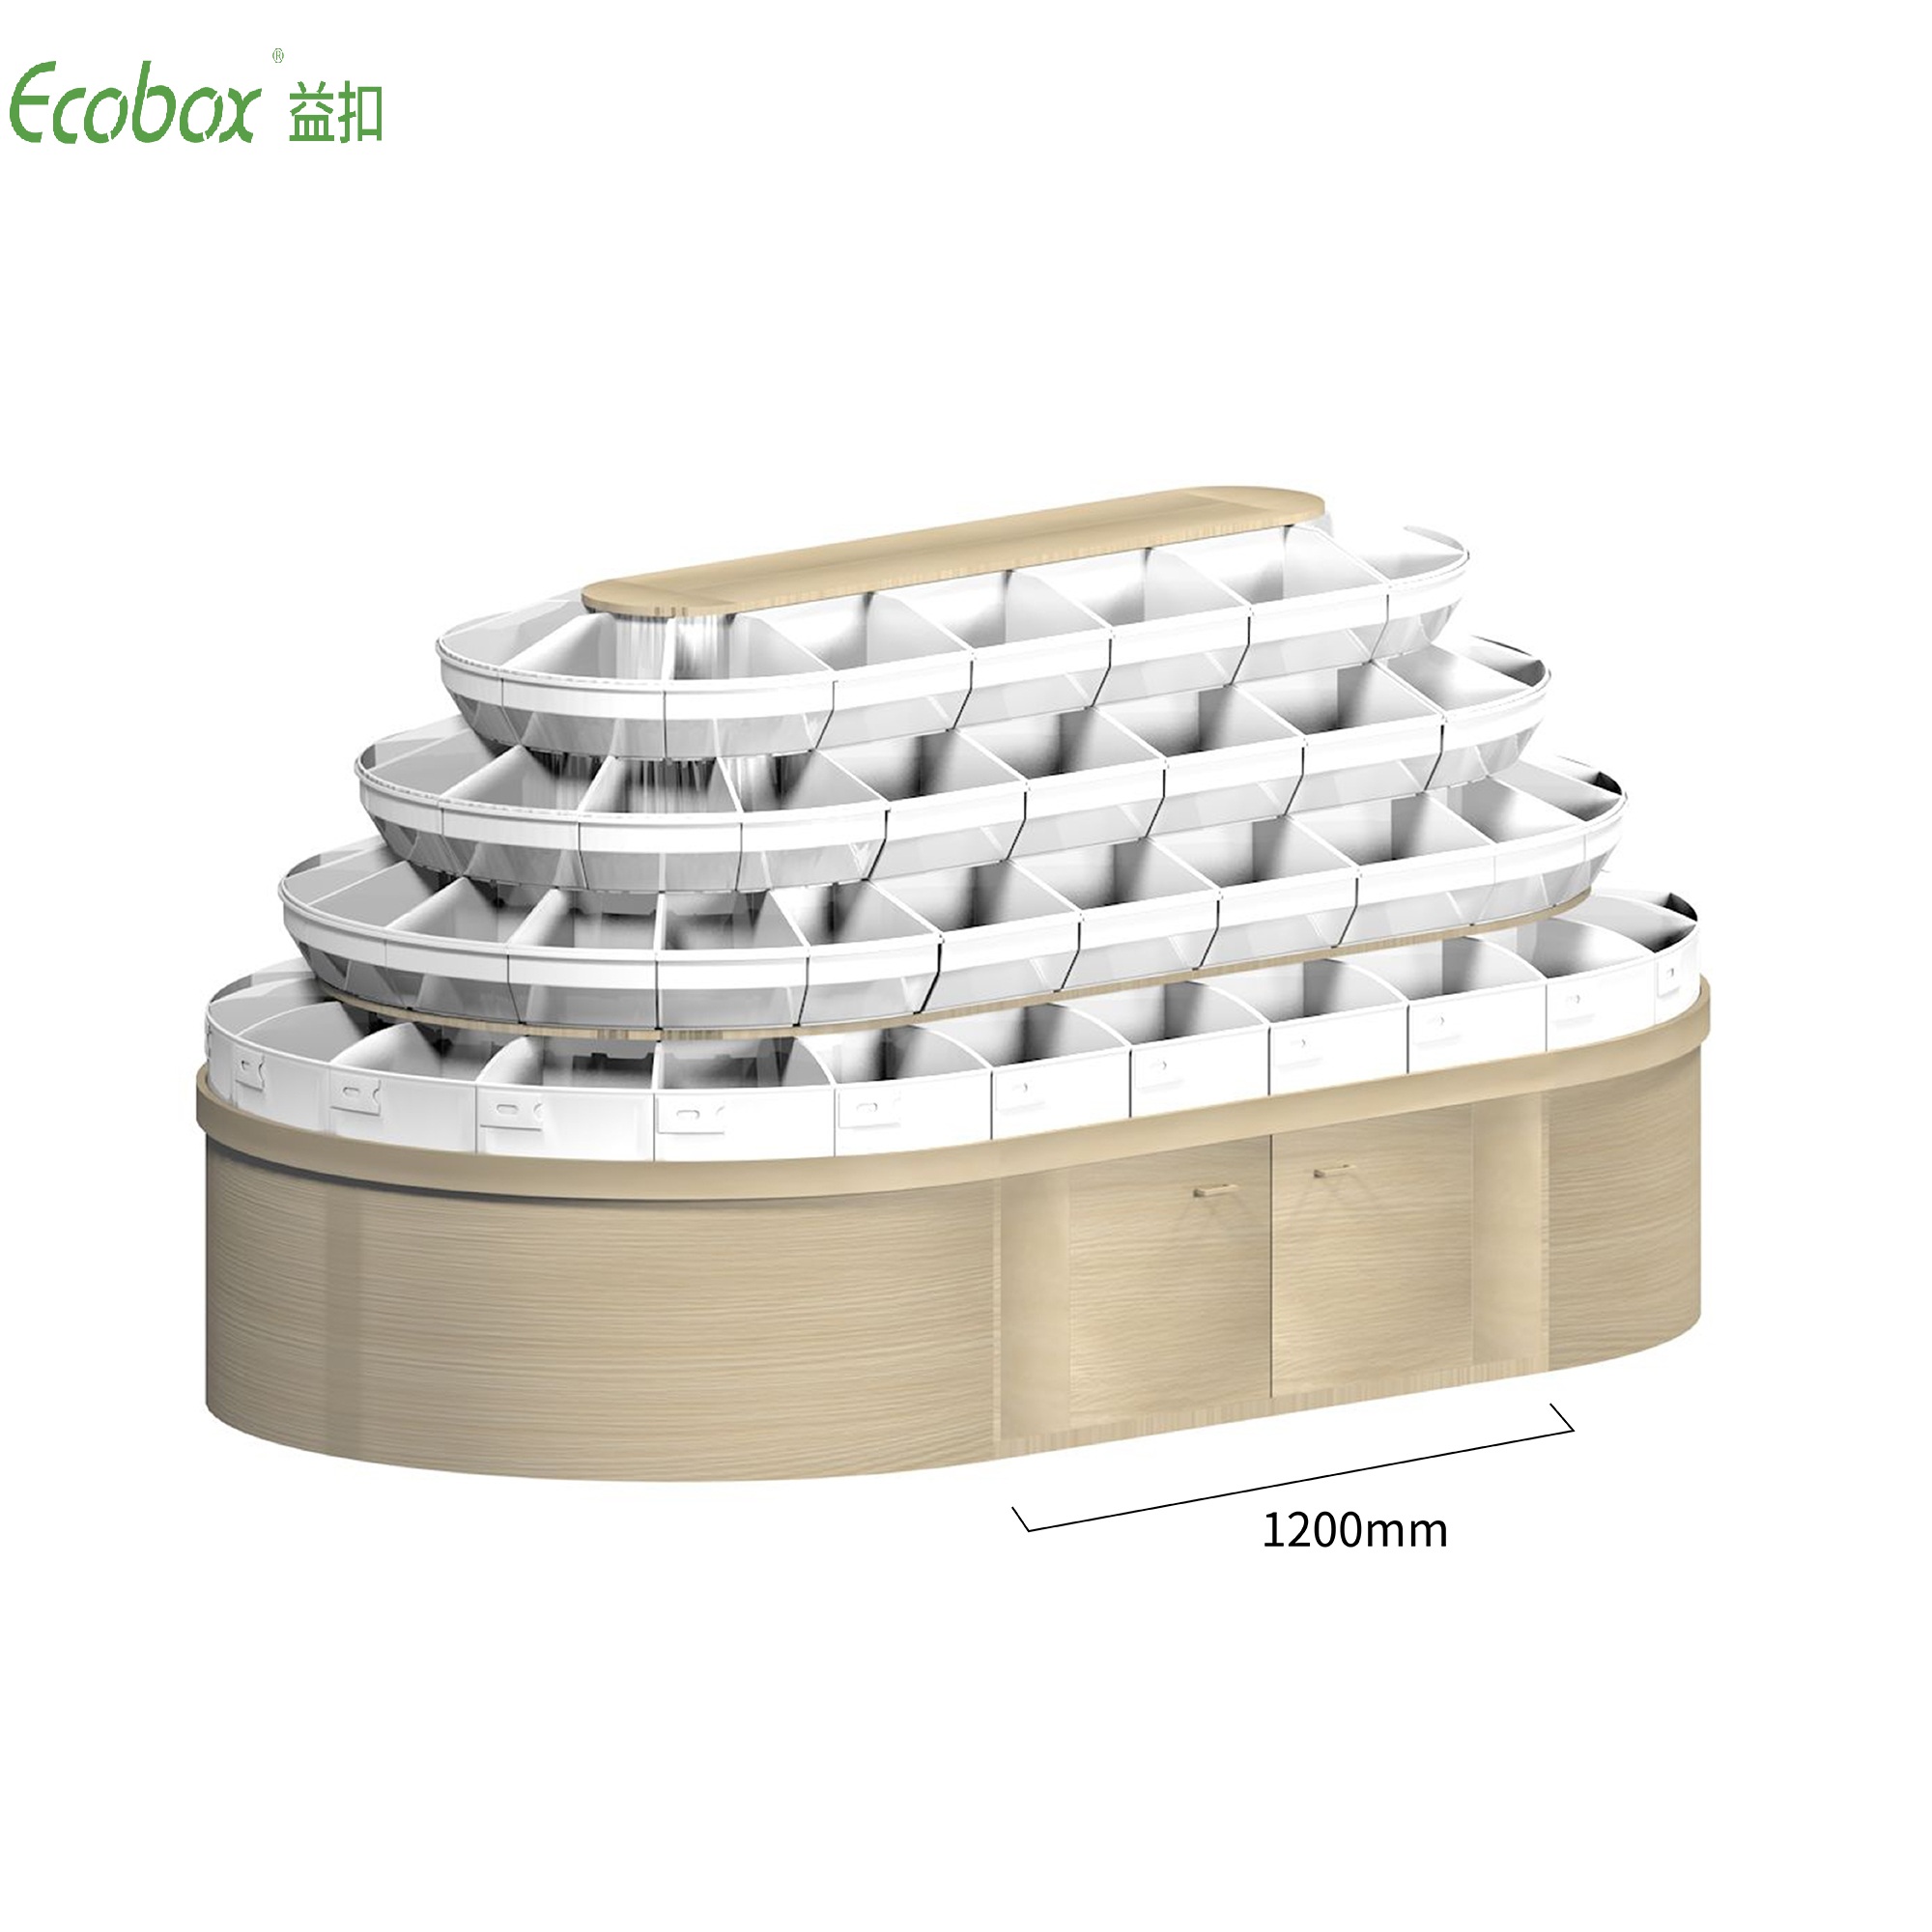 Étagère ronde de la série Ecobox G008 avec présentoirs d'aliments en vrac de supermarché pour bacs en vrac Ecobox